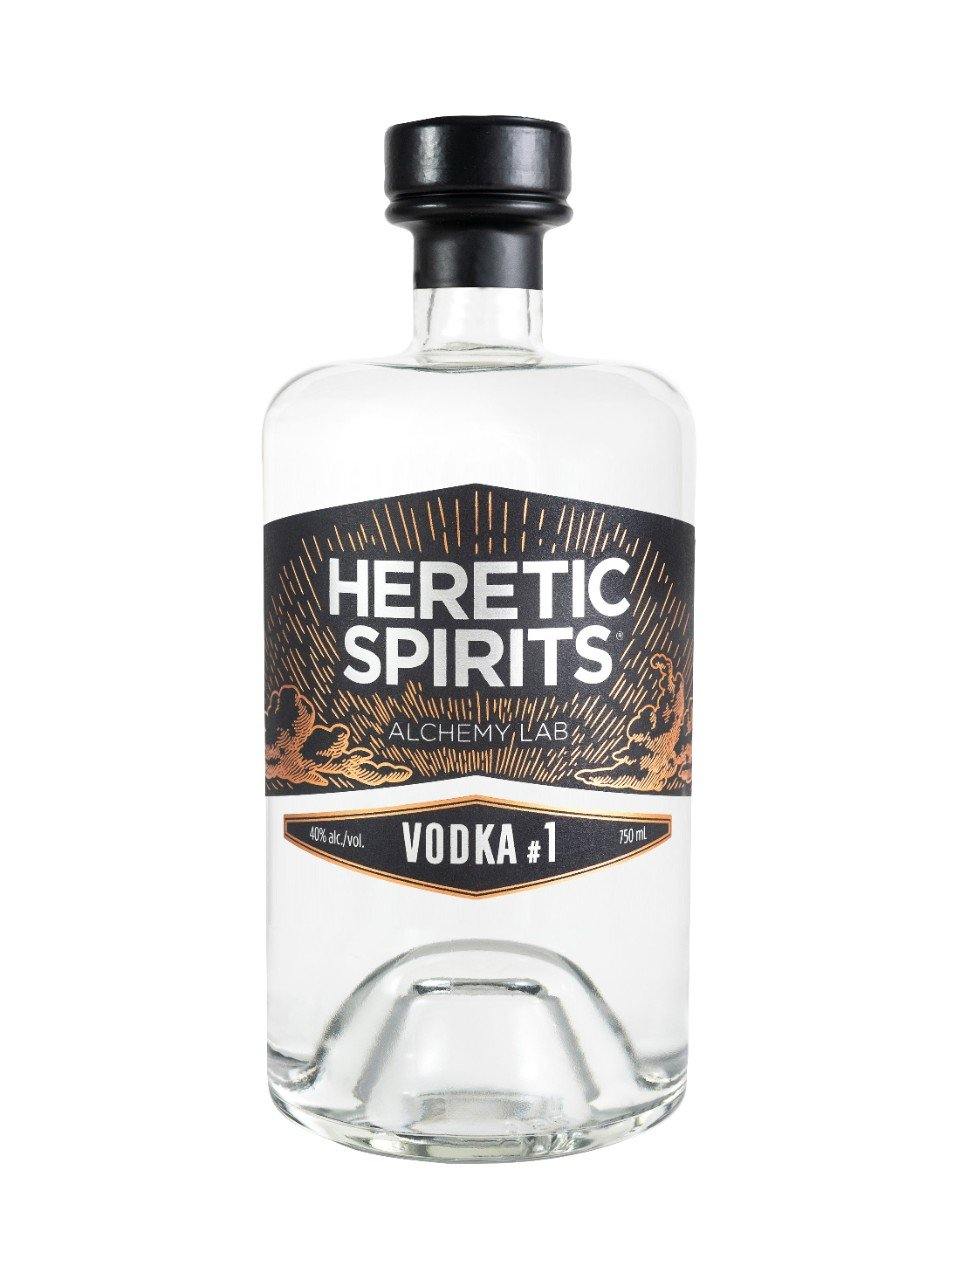 Heretic Spirits Vodka #1  750 mL bottle - Speedy Booze